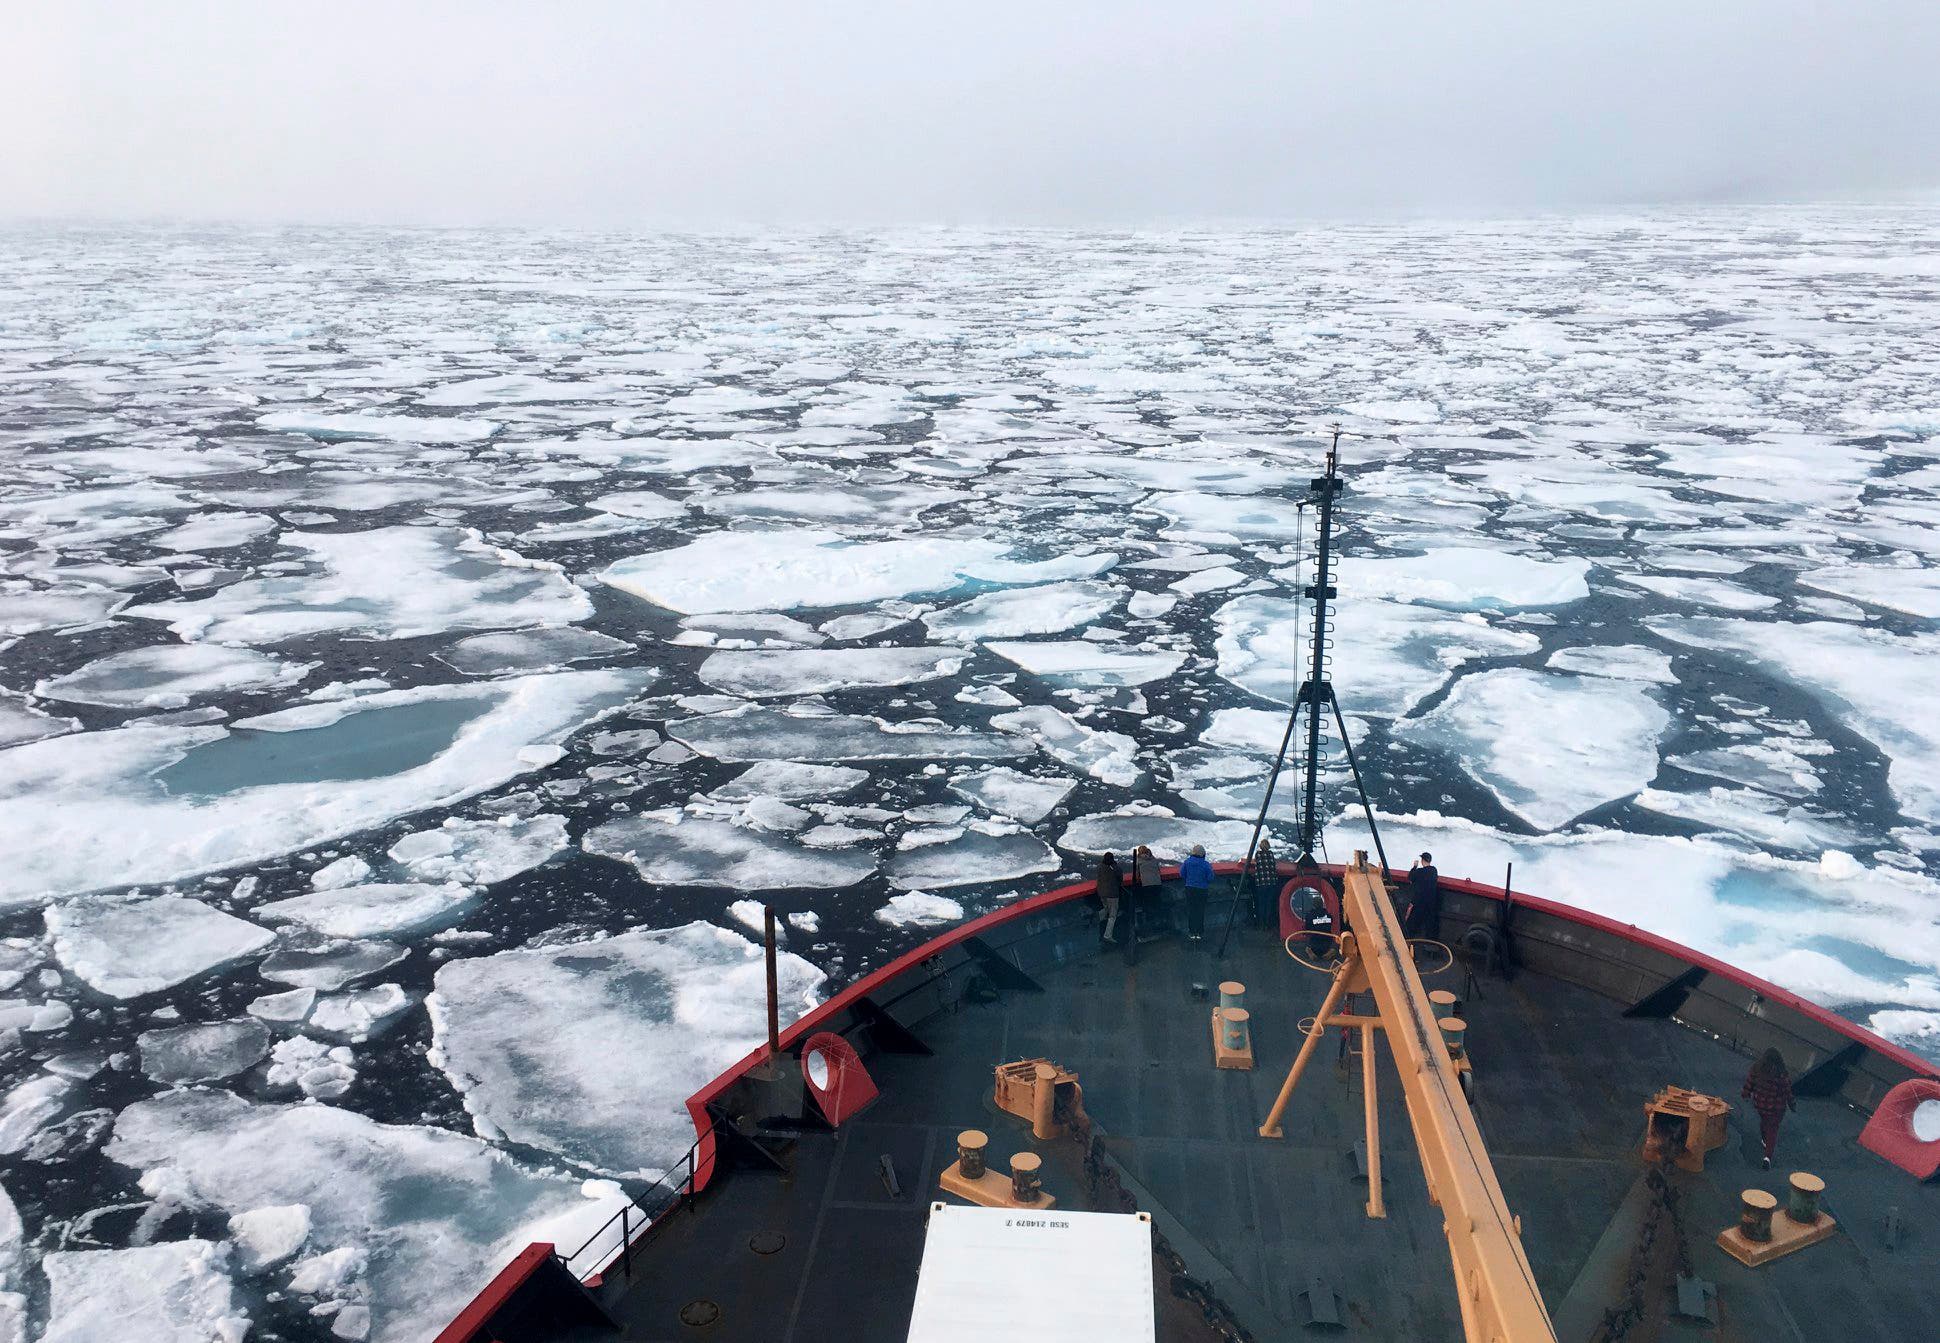 الجليد يذوب بسرعة في المياه المحيطة بالقارة القطبية الجنوبية